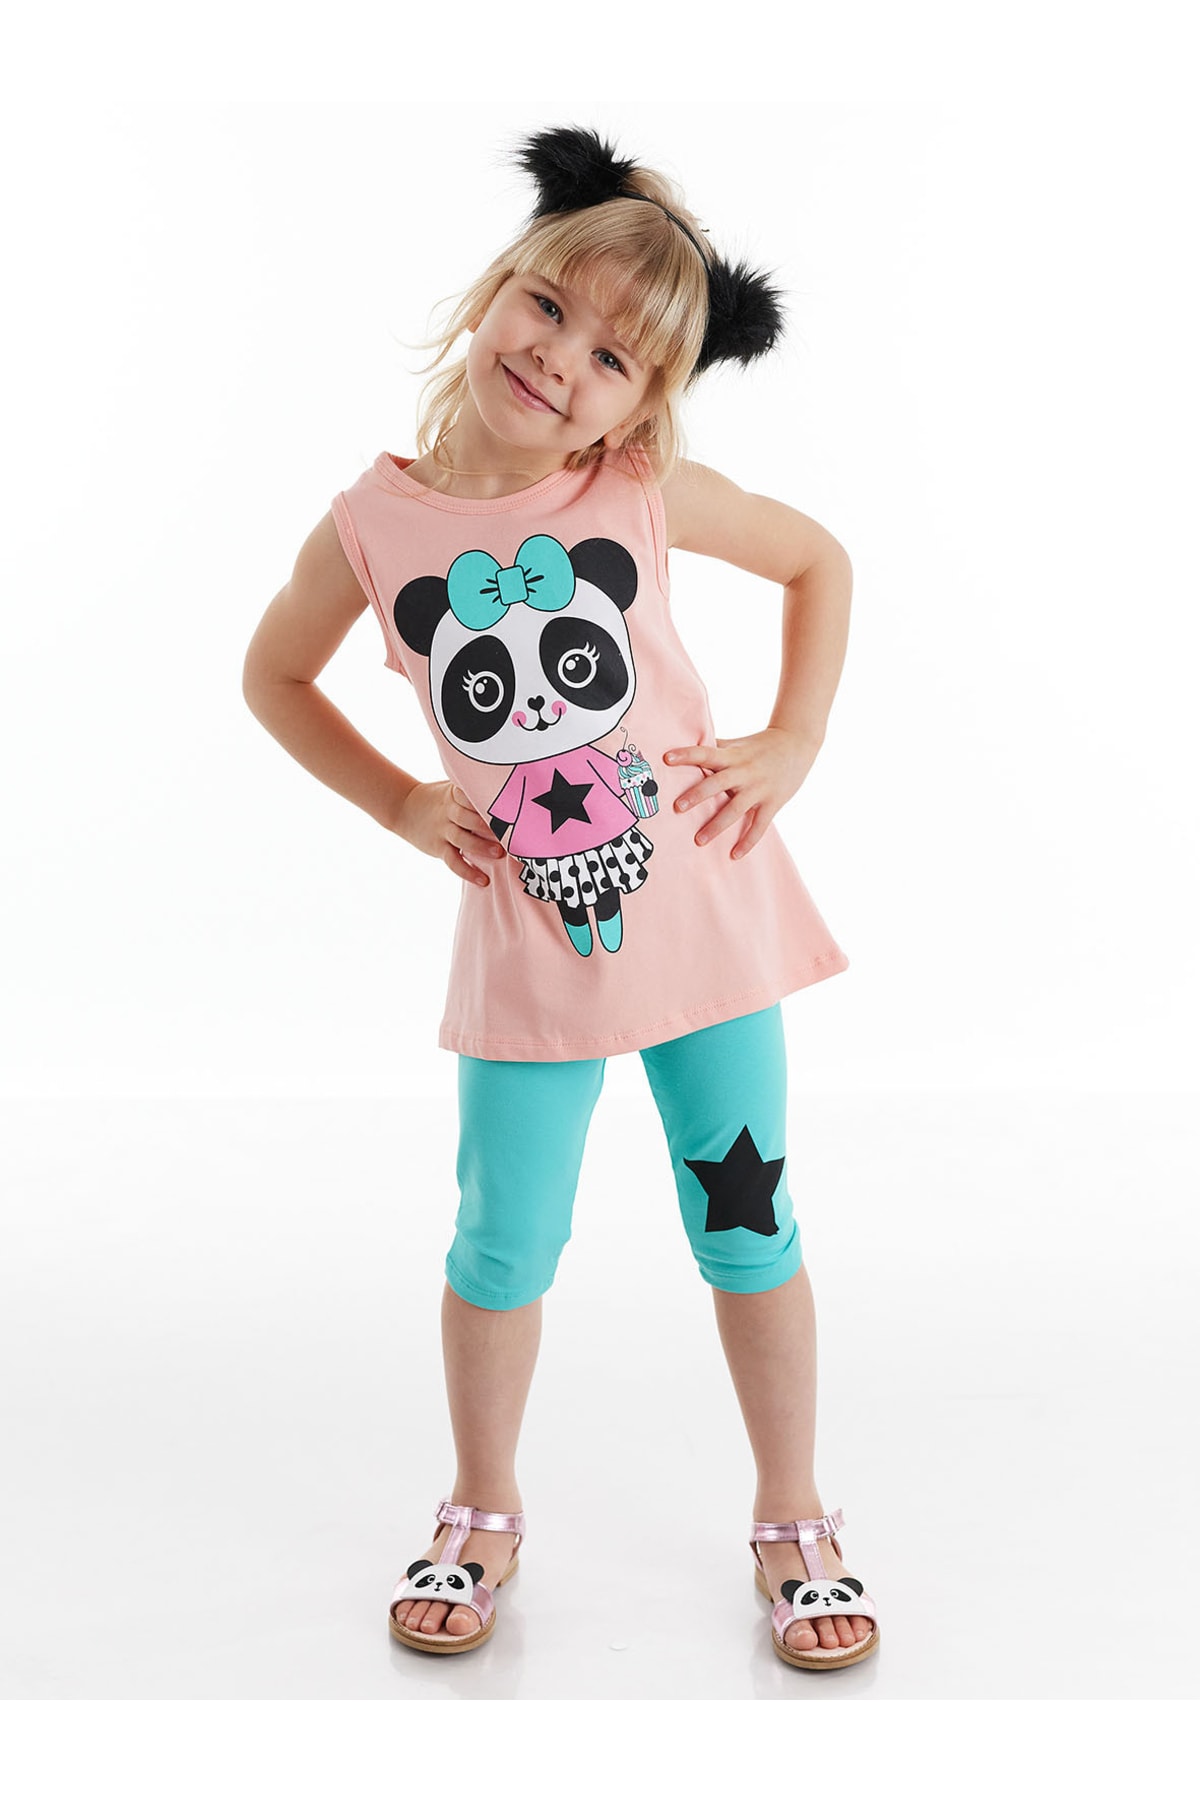 Denokids Panda Star Girls T-shirt Leggings Suit